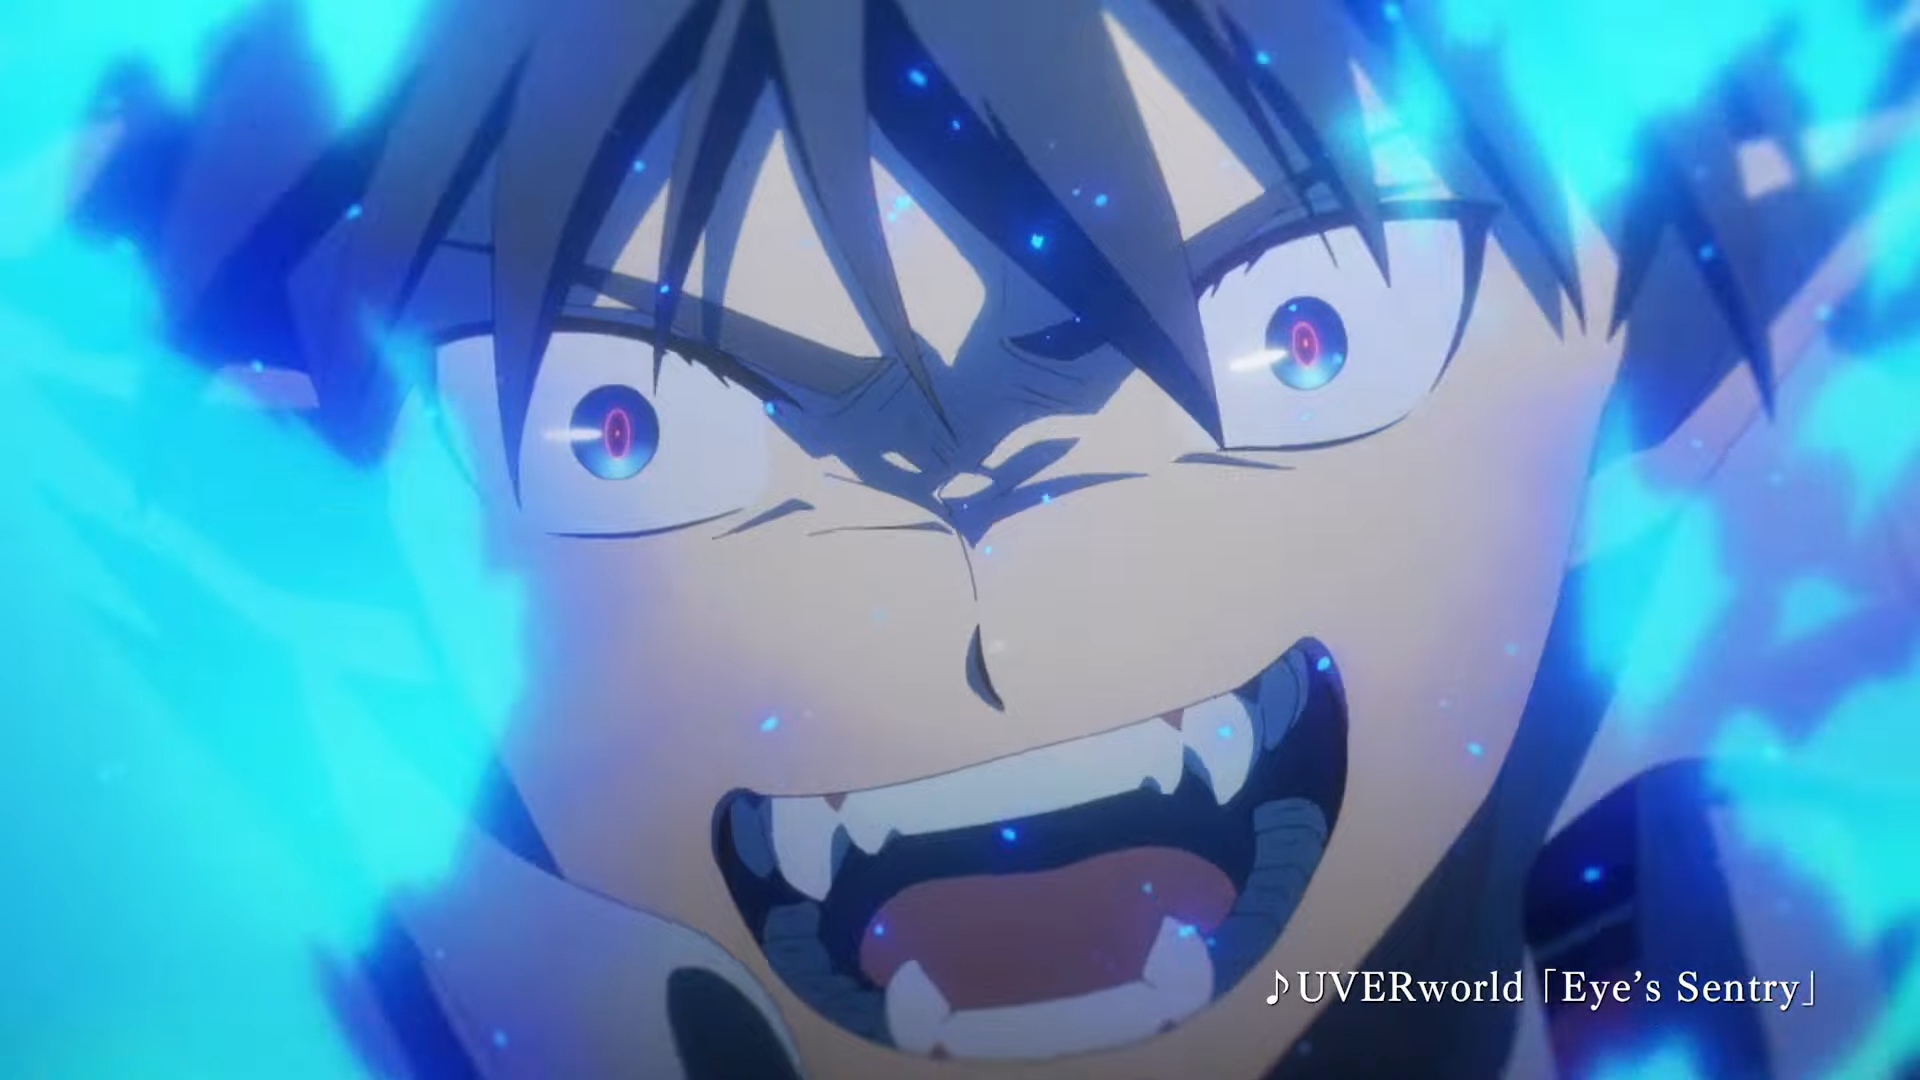 Crunchyroll, Aniplex Slate New 'Sword Art Online' Movie for February